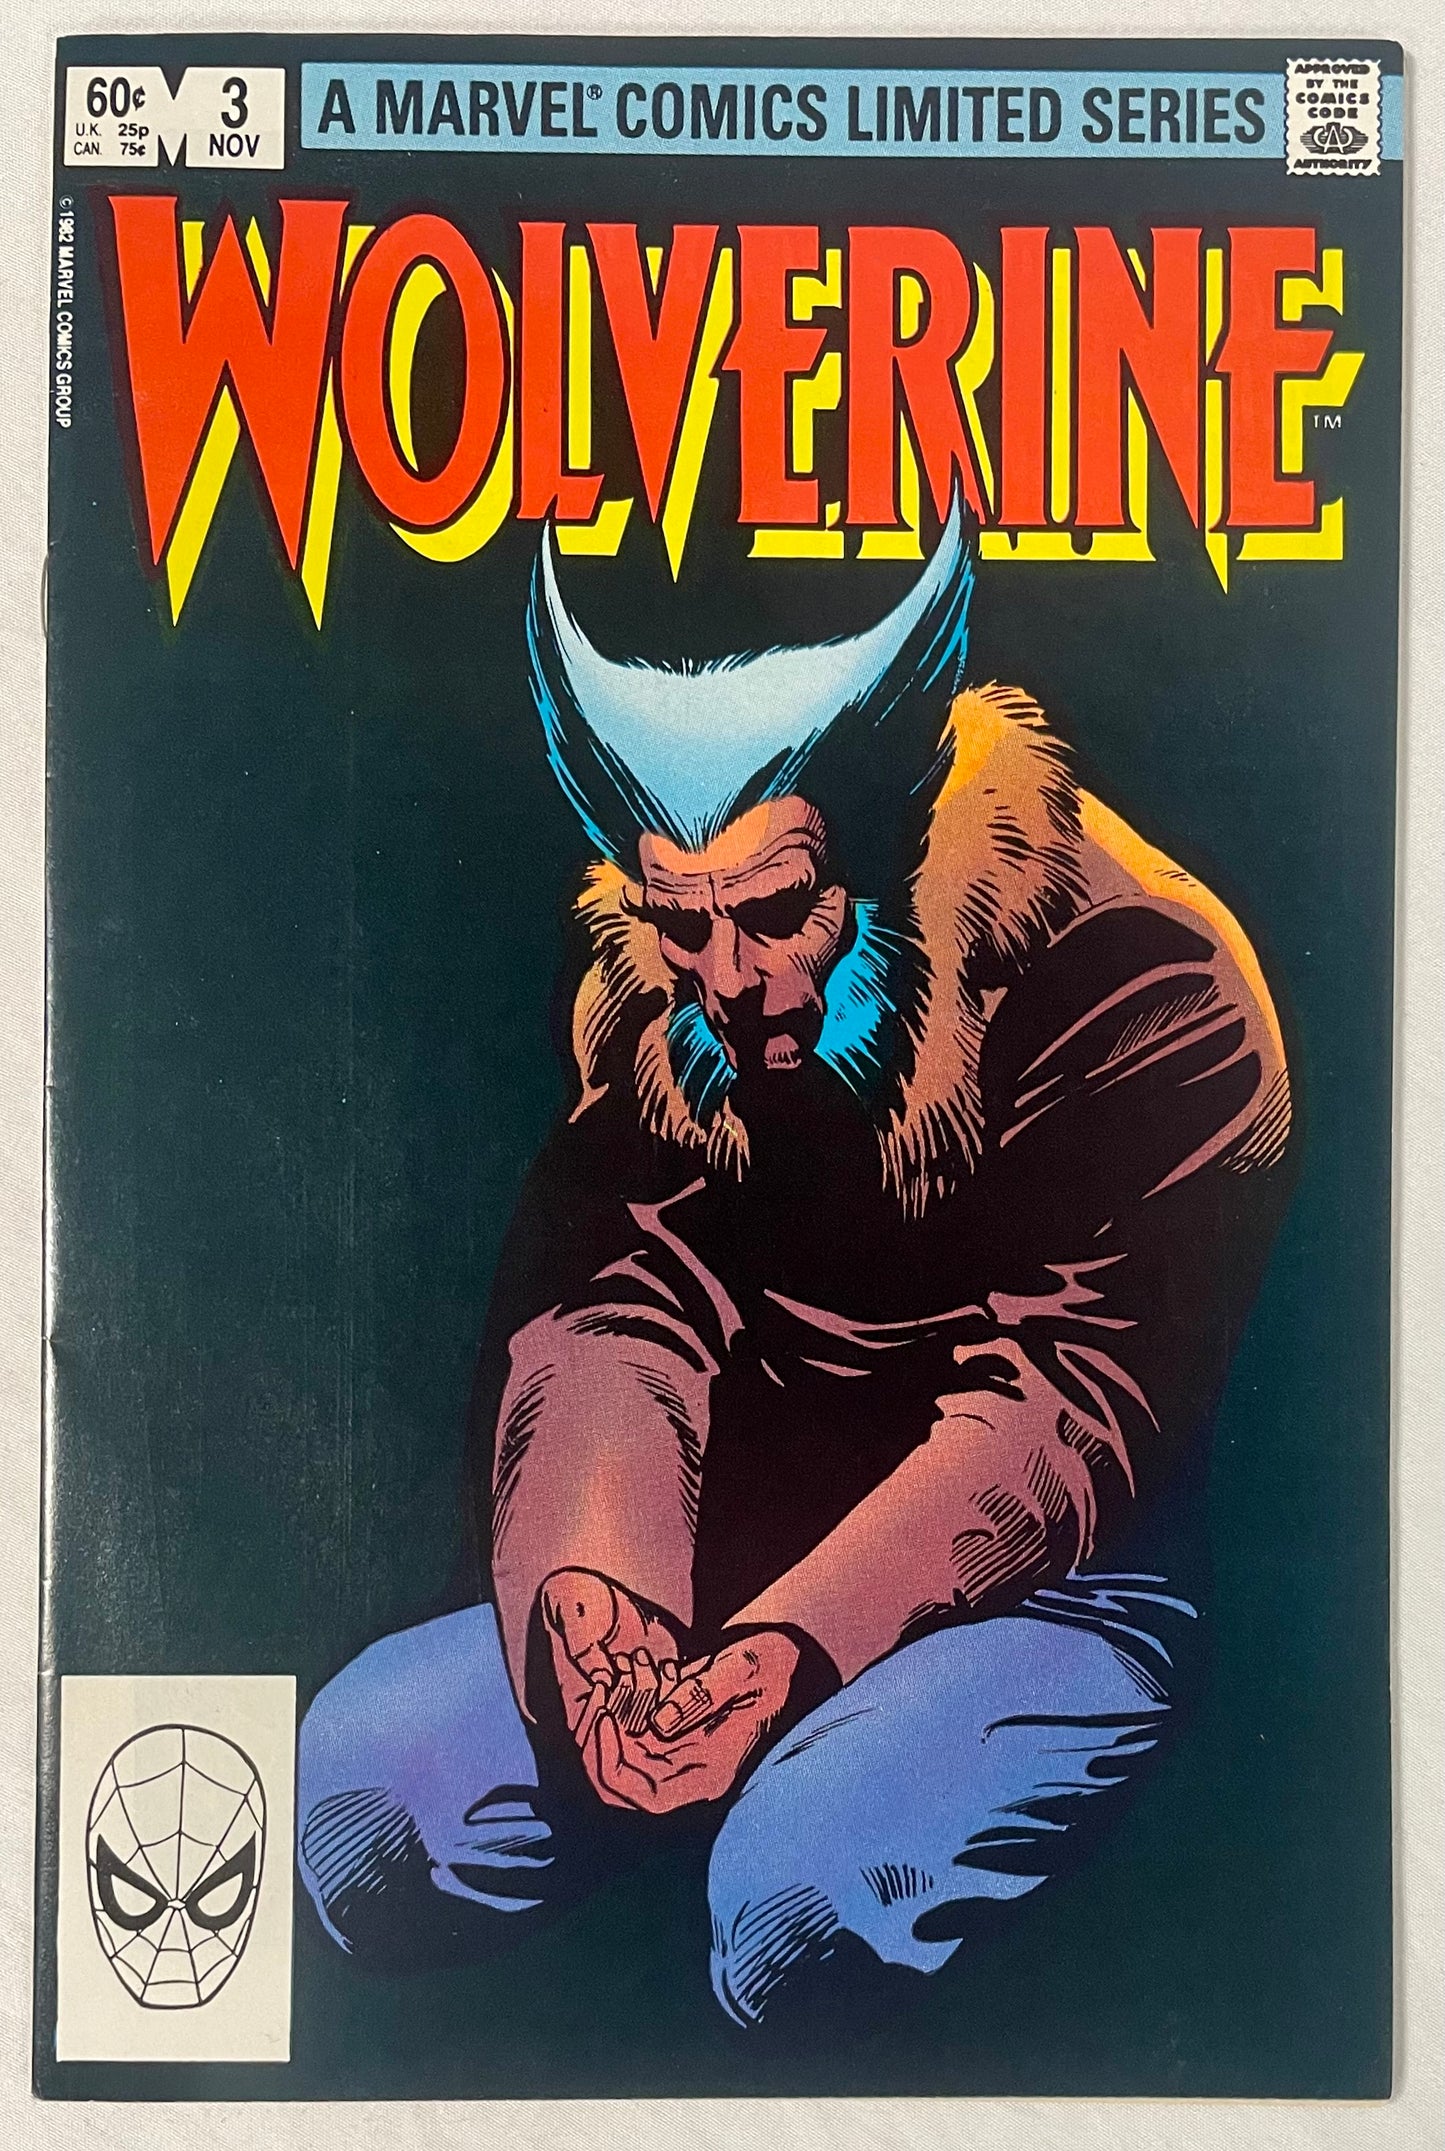 Marvel Comics Wolverine Limited Series #3